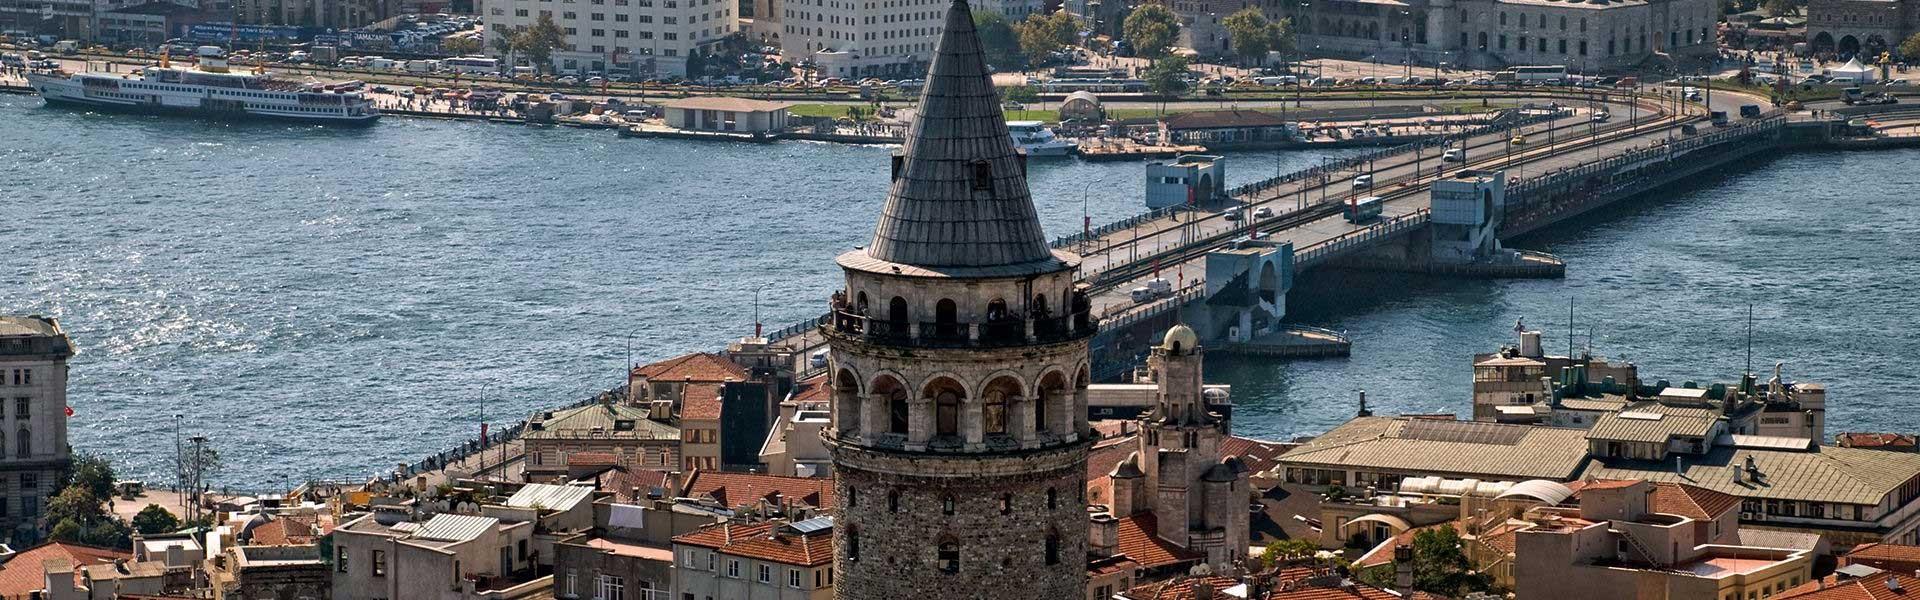 برج گالاتا استانبول  Galata tower Istanbul